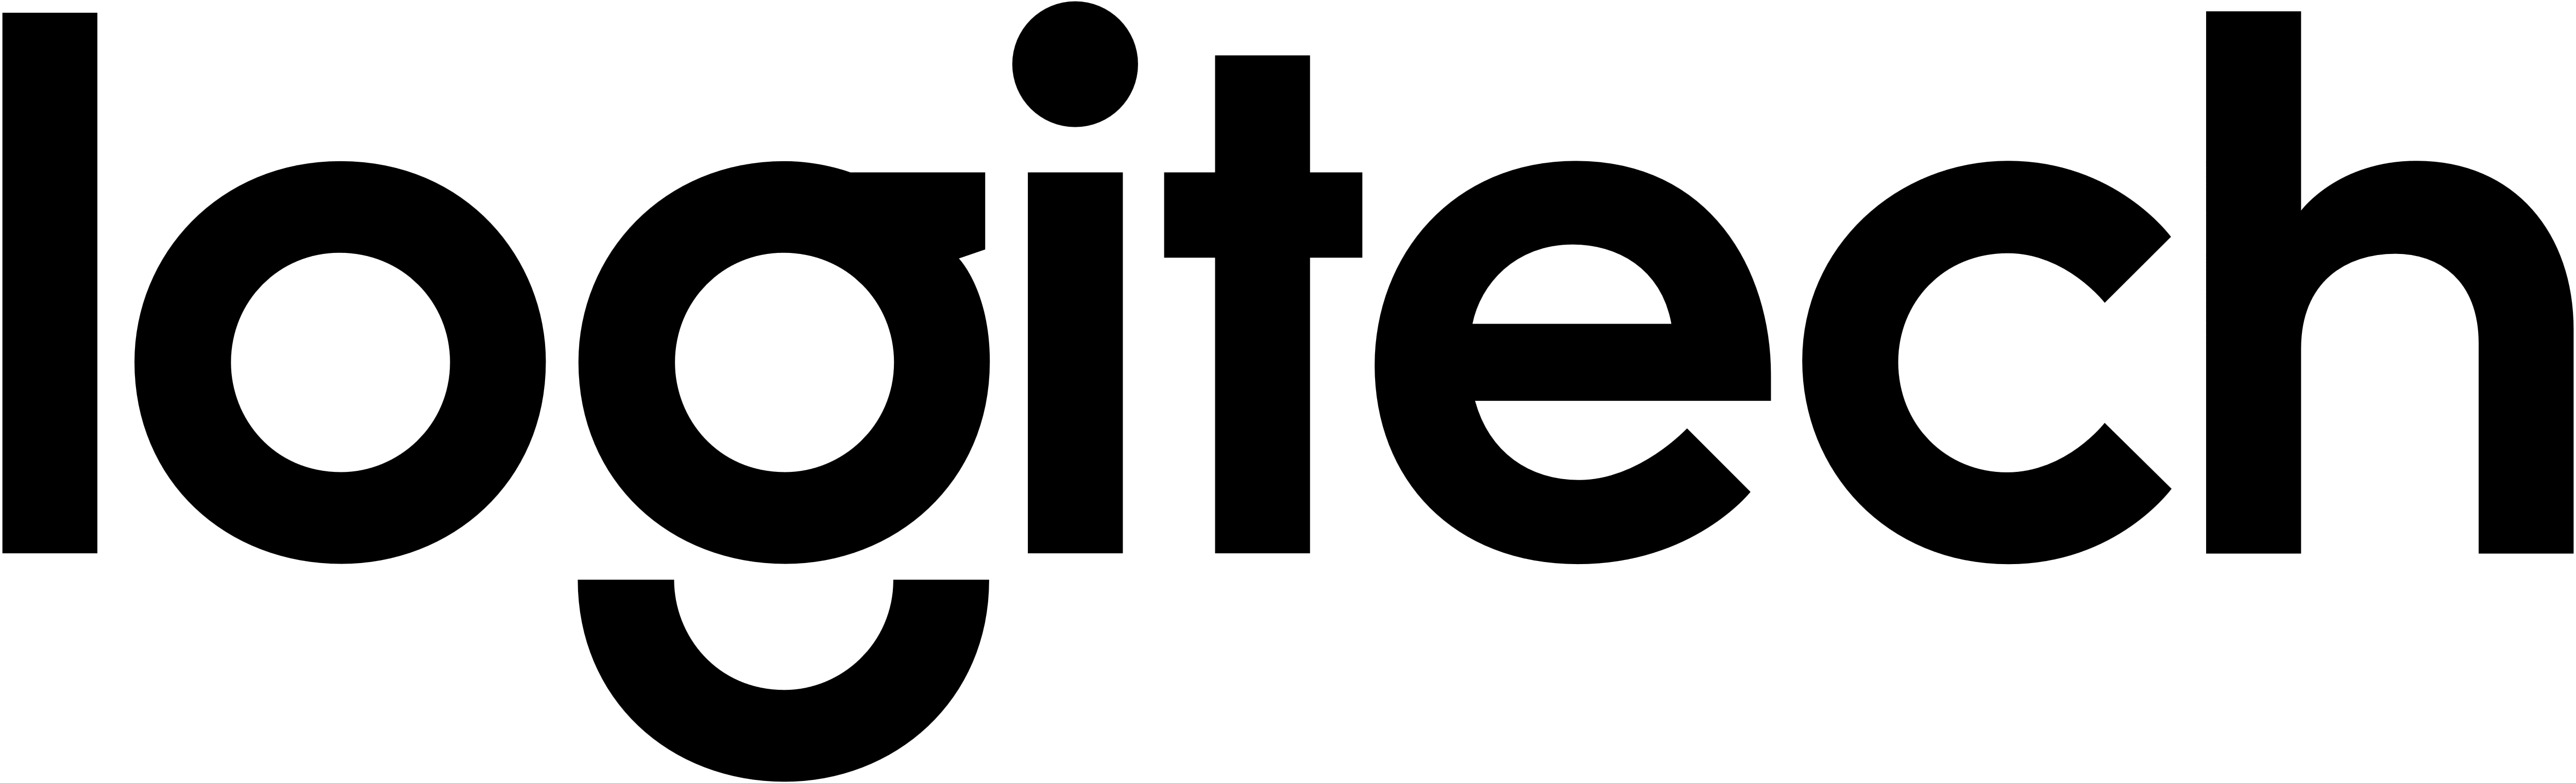 Download Logitech Logo In Svg